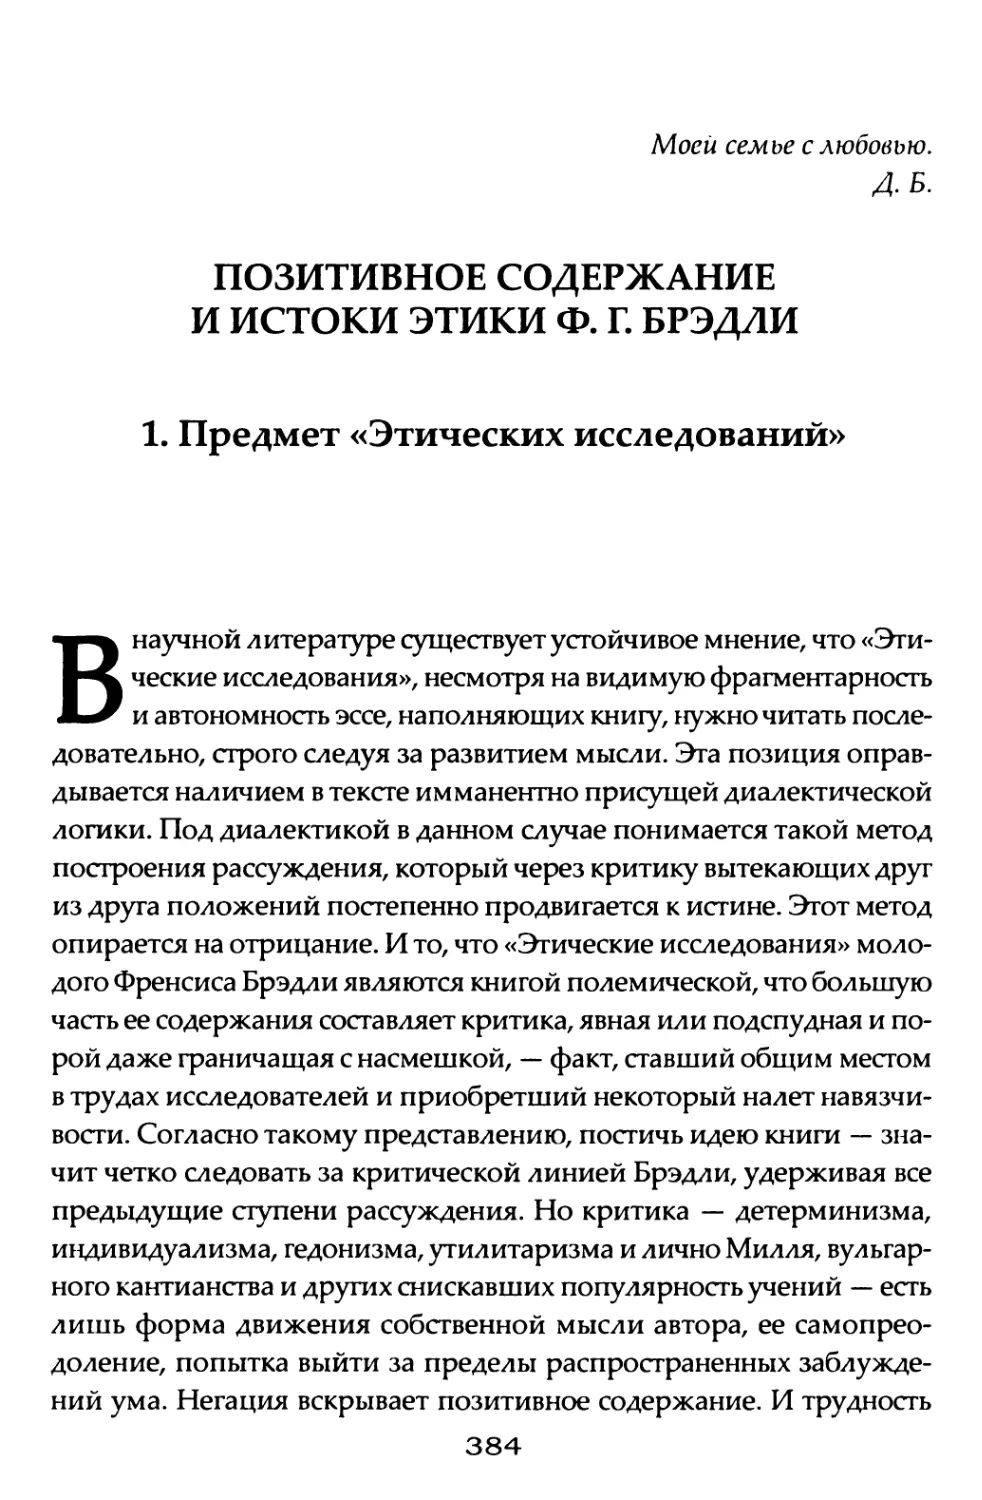 Позитивное содержание и истоки этики Ф. Г. Брэдли. Д. А. Бабушкина